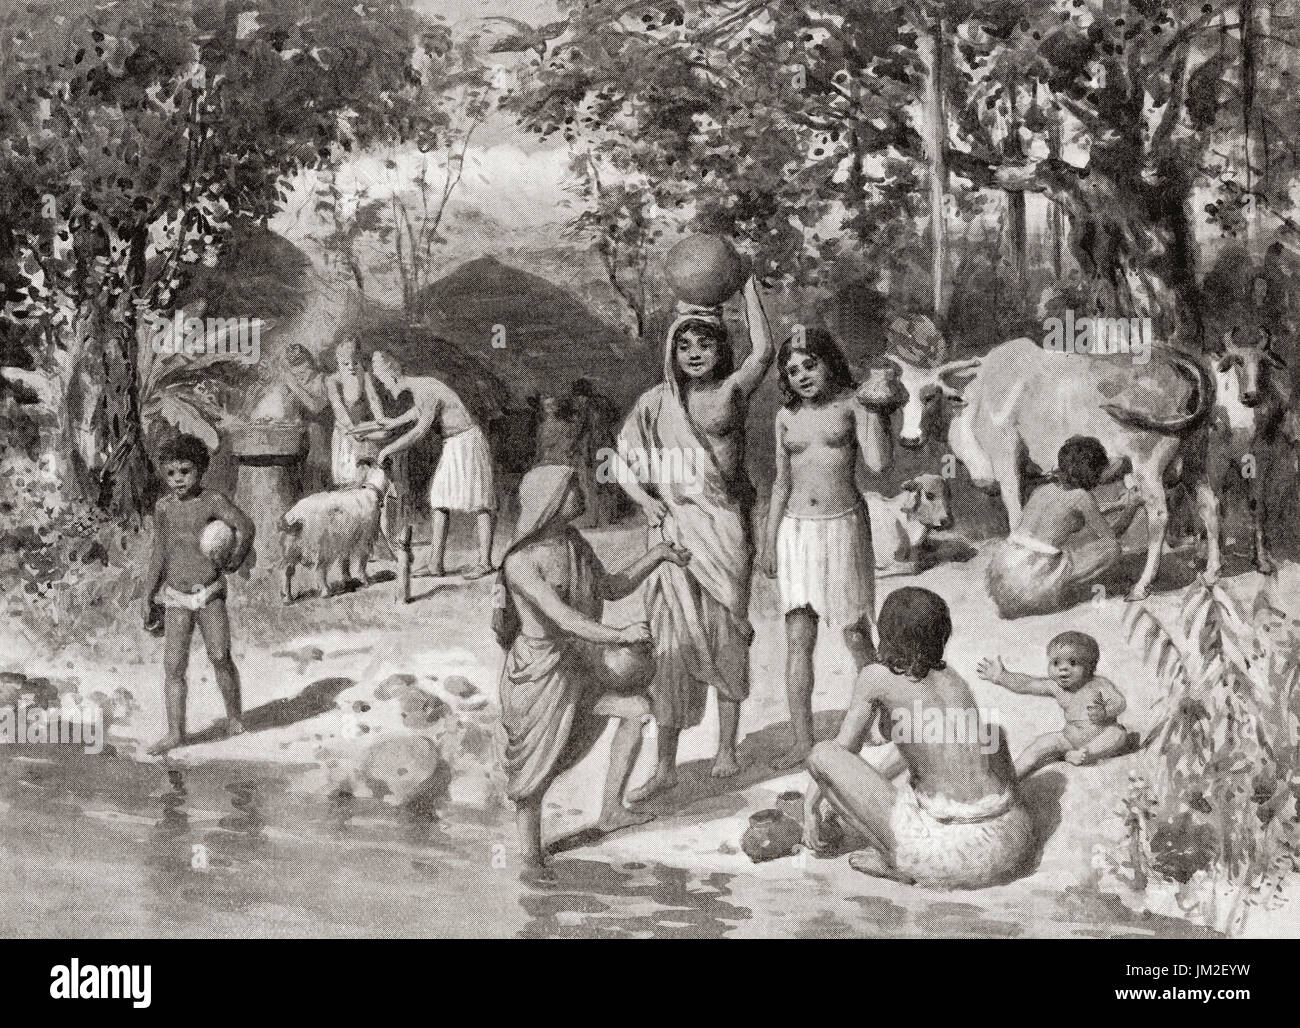 Ein Indo-Aryan Siedlung im alten Indien.  Hutchinson Geschichte der Nationen veröffentlichte 1915. Stockfoto